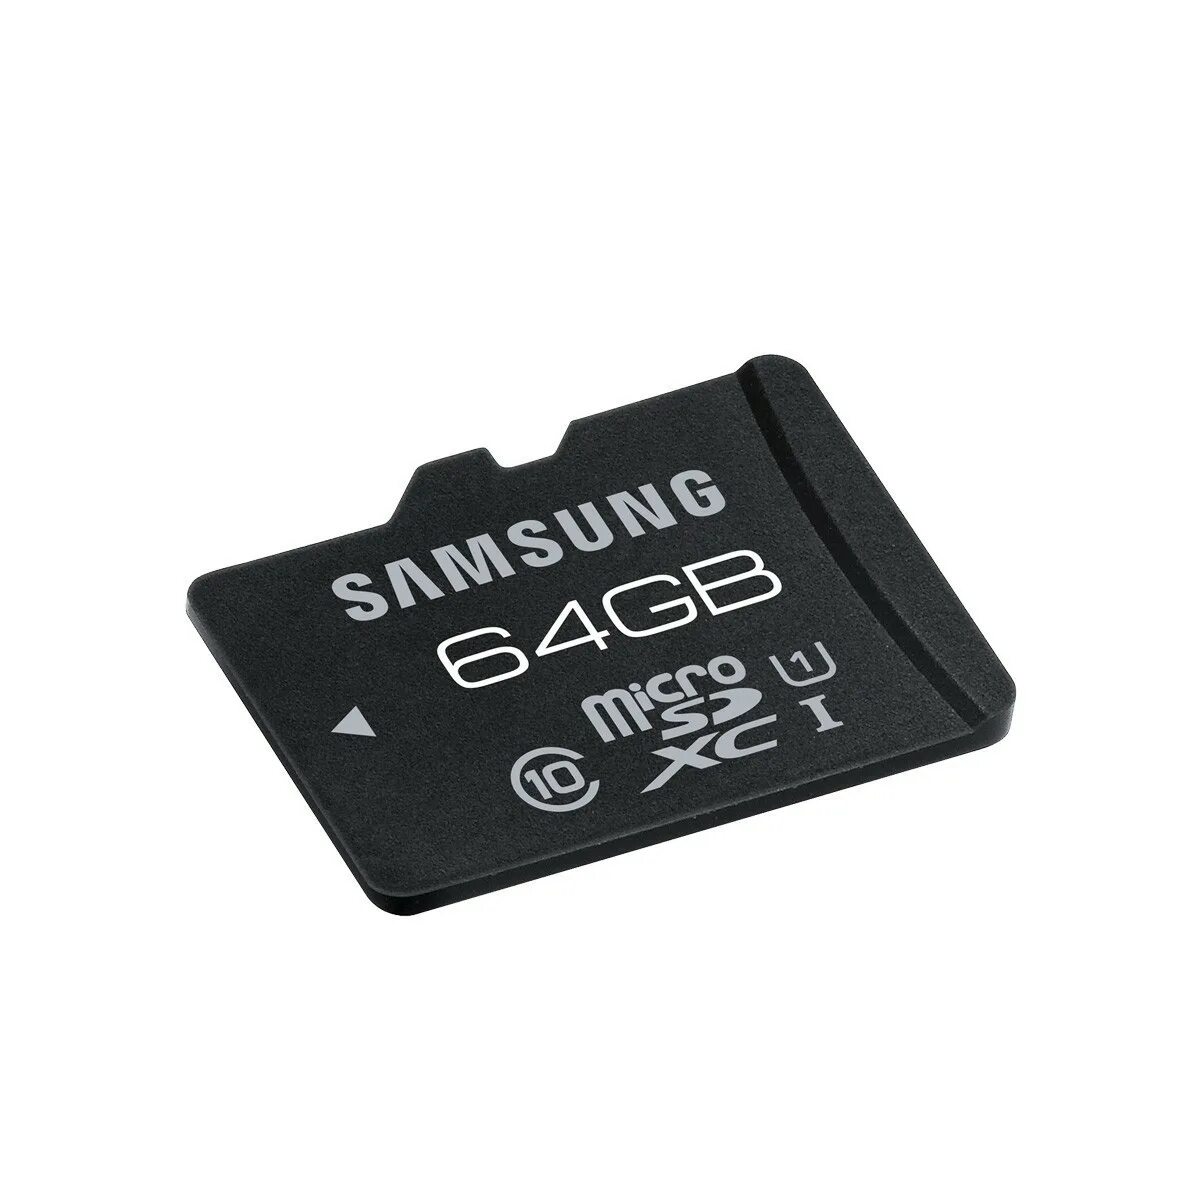 Микро СД самсунг 32u. 32гб карта памяти Samsung MICROSD. Флешка микро СД 64. Флешка 64 ГБ микро SD. Карты микро сд 64